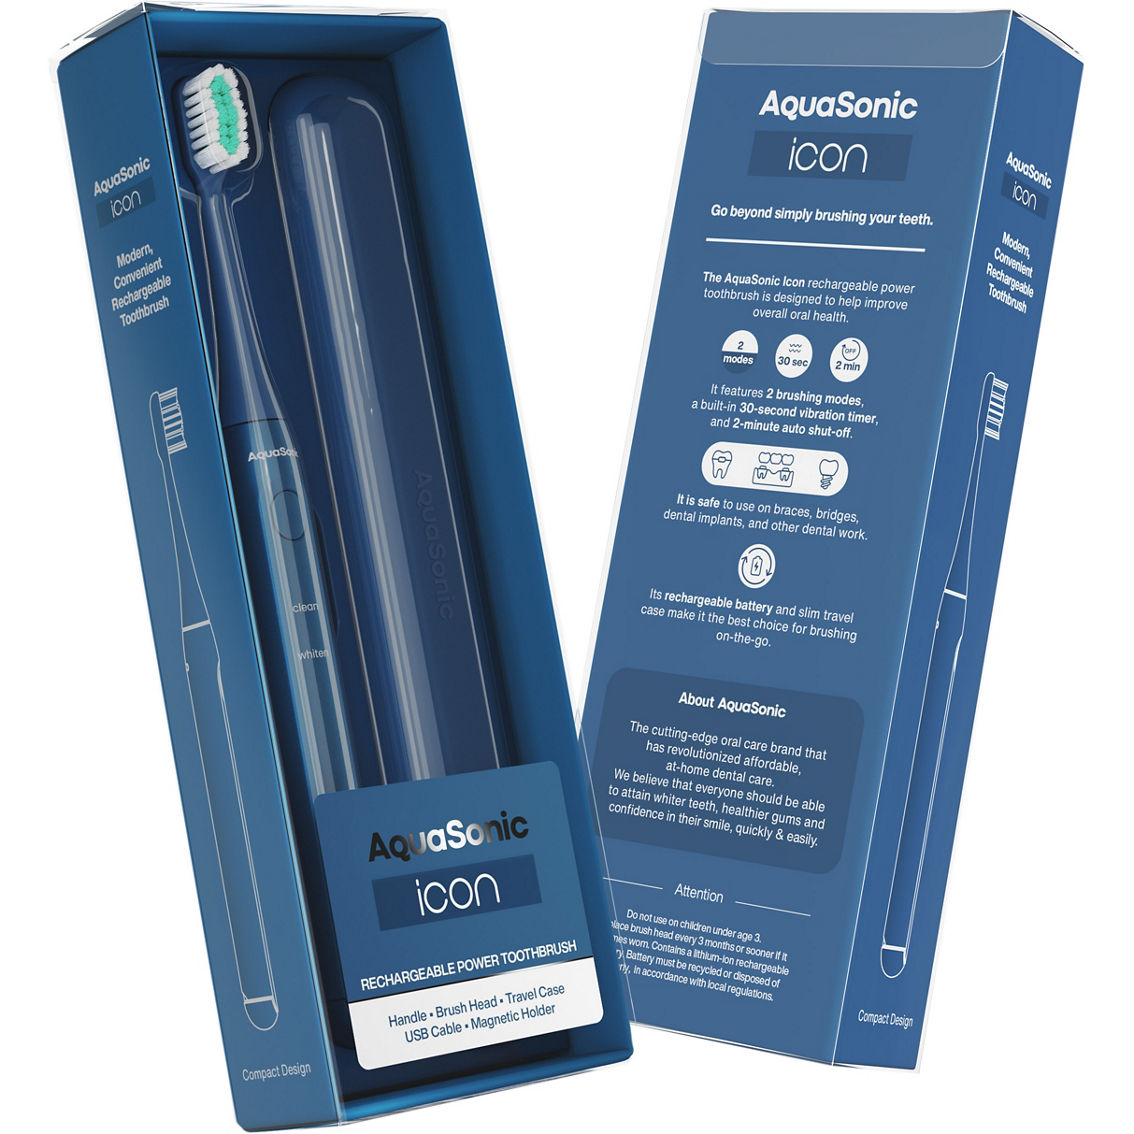 AquaSonic Icon Rechargeable Toothbrush - Image 2 of 10